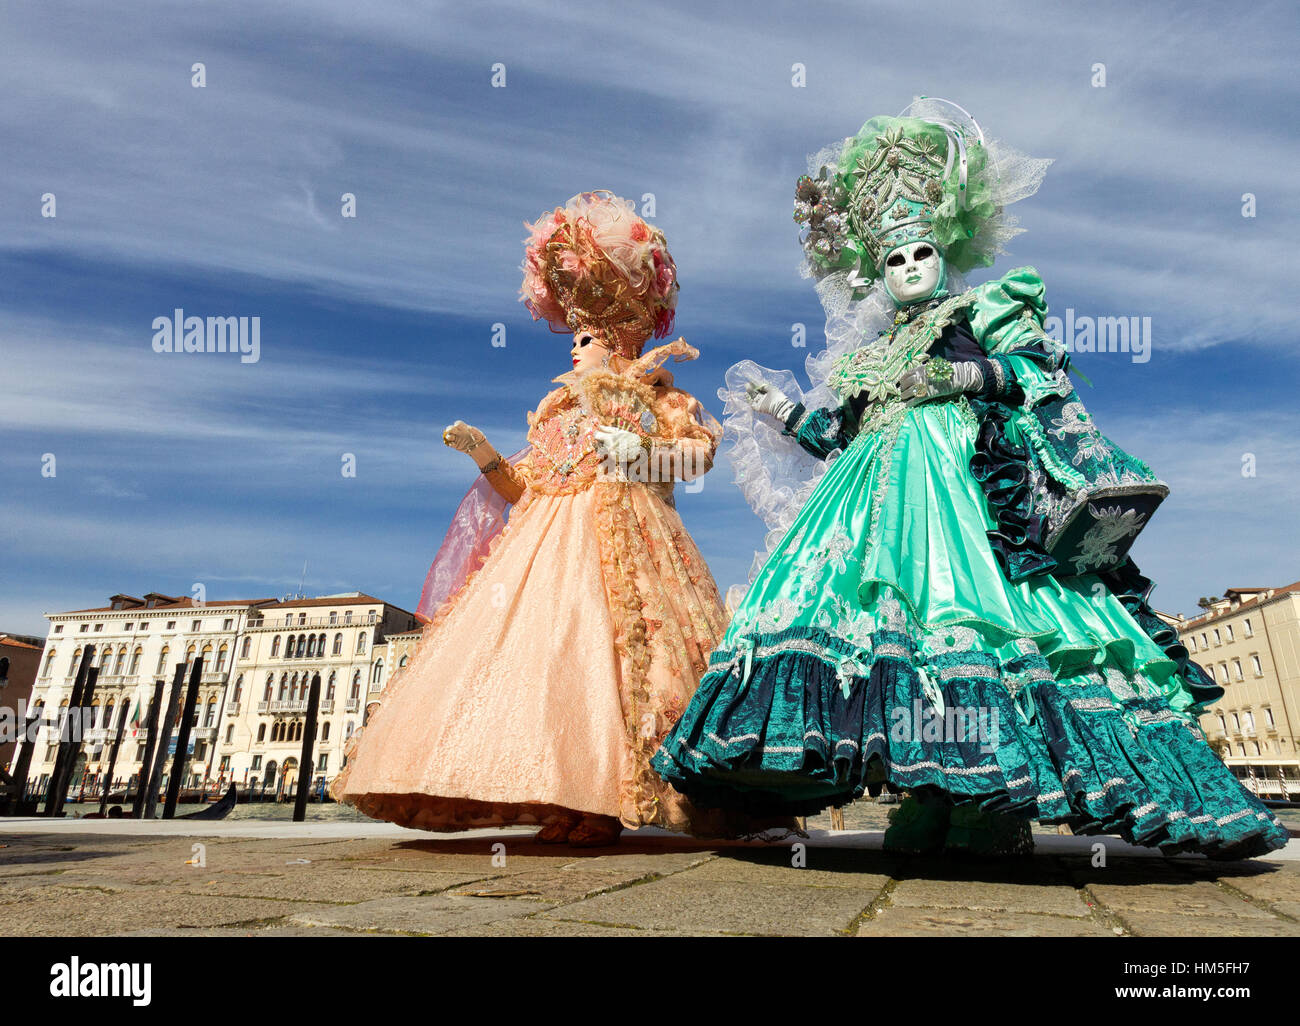 Venise - 7 février : les gens costumés sur la Piazza San Marco au cours de Carnaval de Venise le 7 février 2013 à Venise, Italie. Cette année, le carnaval était h Banque D'Images